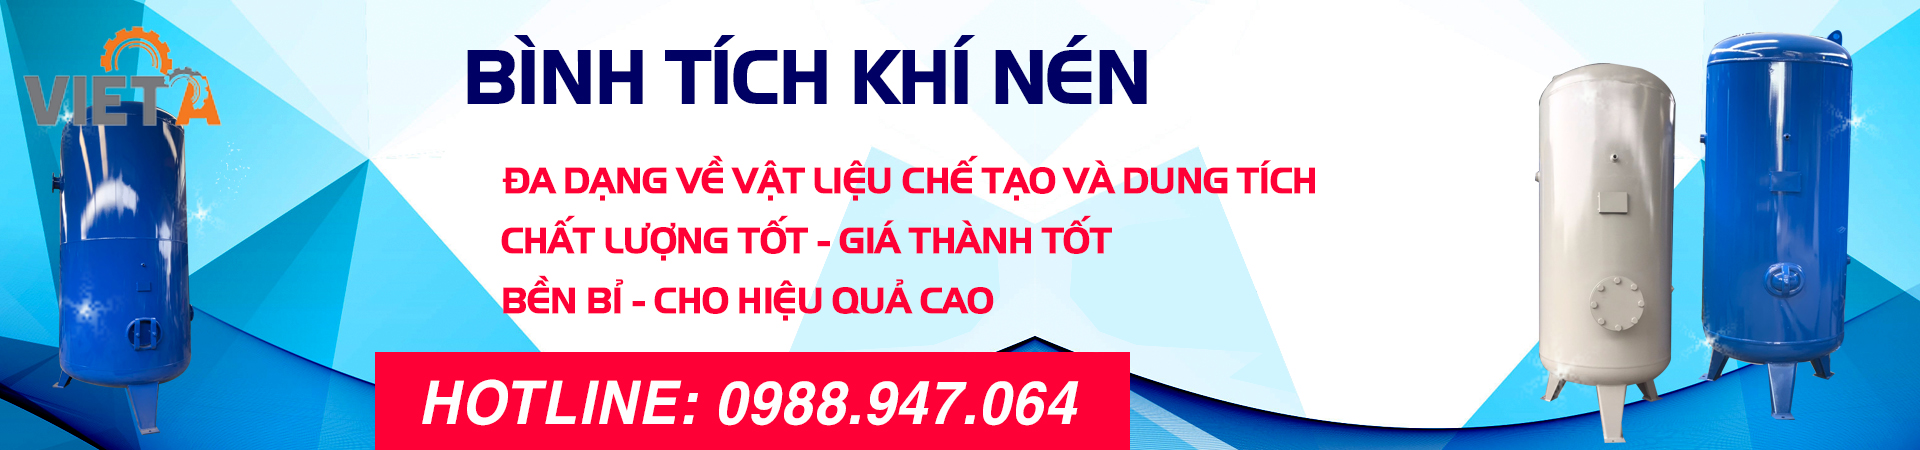 Bình chứa khí nén chính hãng Hà Nội Việt Á